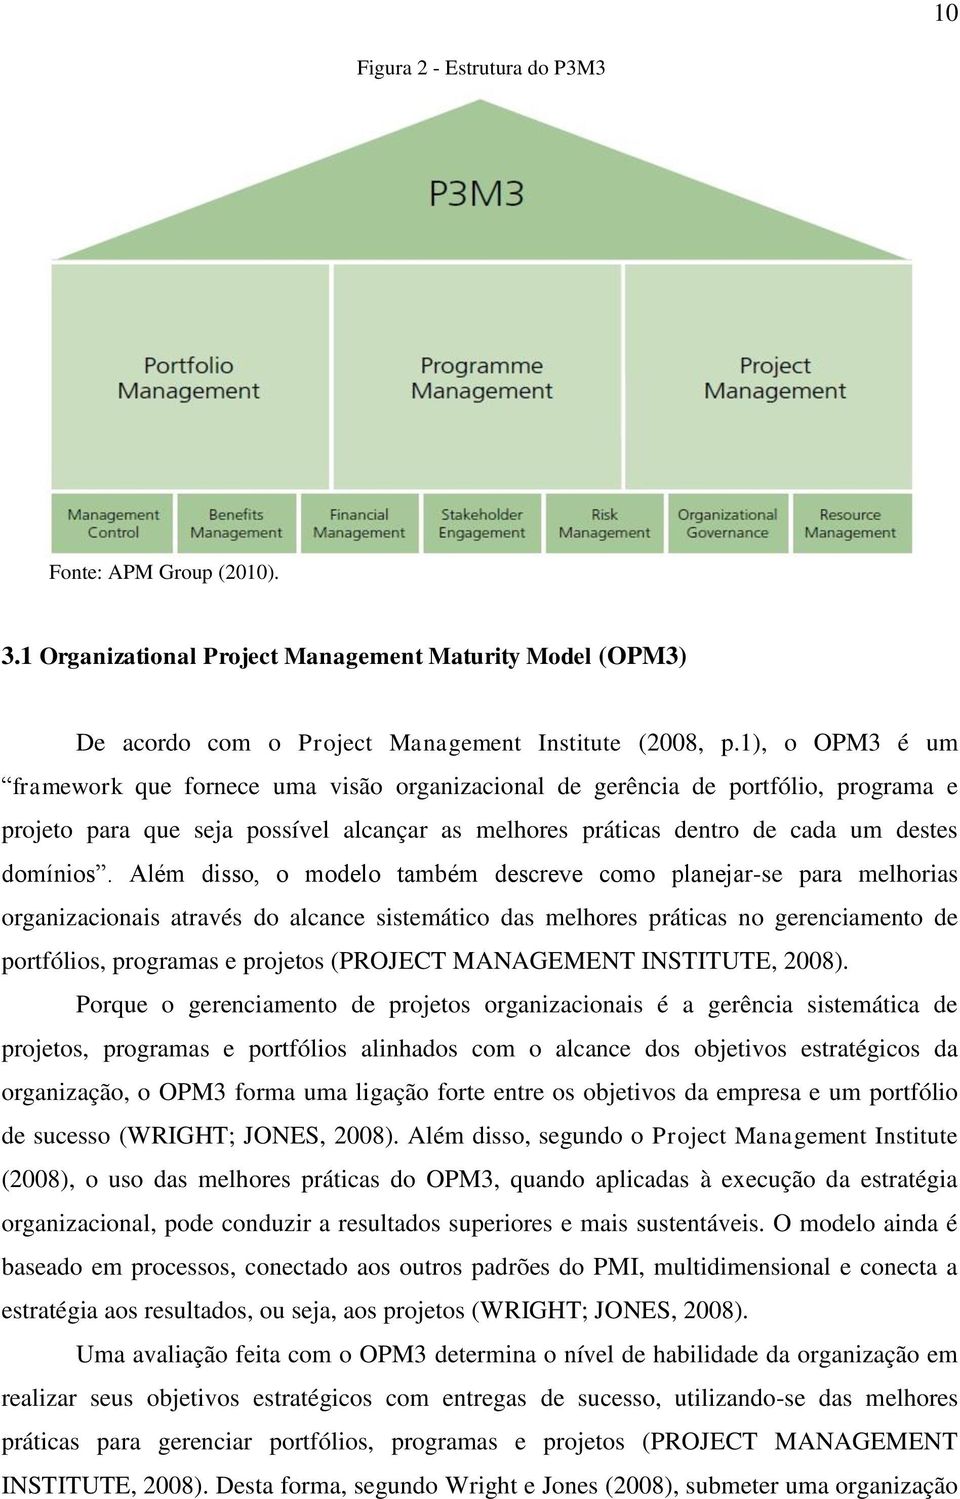 Além disso, o modelo também descreve como planejar-se para melhorias organizacionais através do alcance sistemático das melhores práticas no gerenciamento de portfólios, programas e projetos (PROJECT